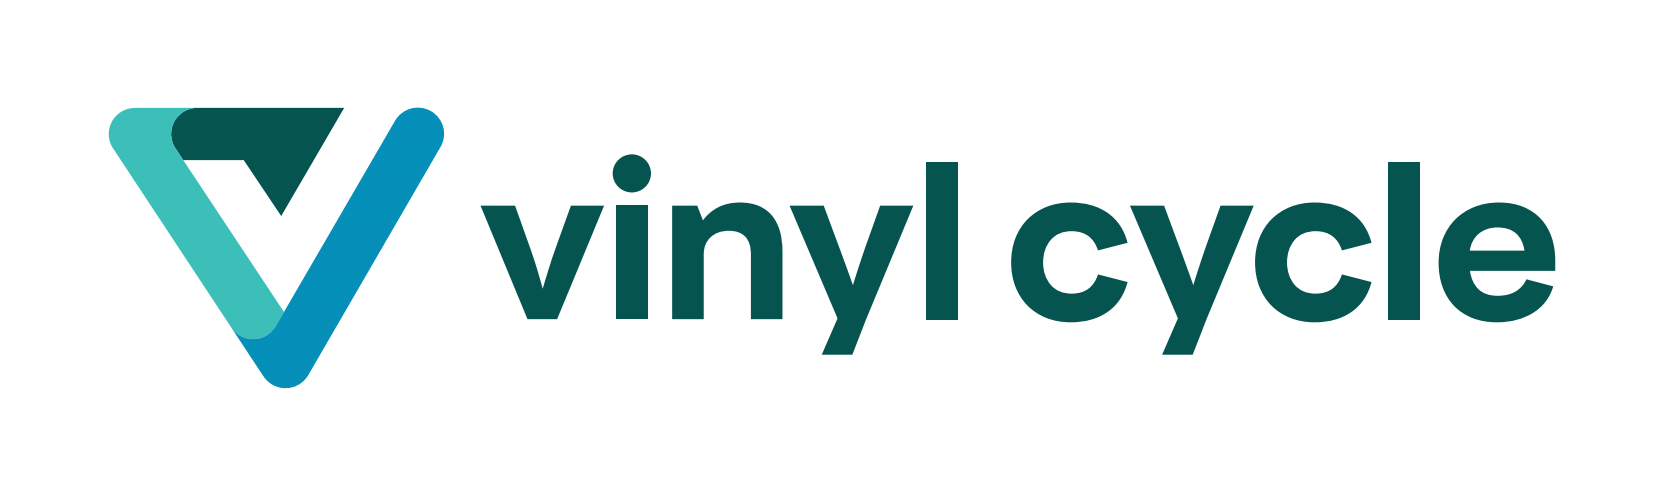 VinylCycle logo horizontal